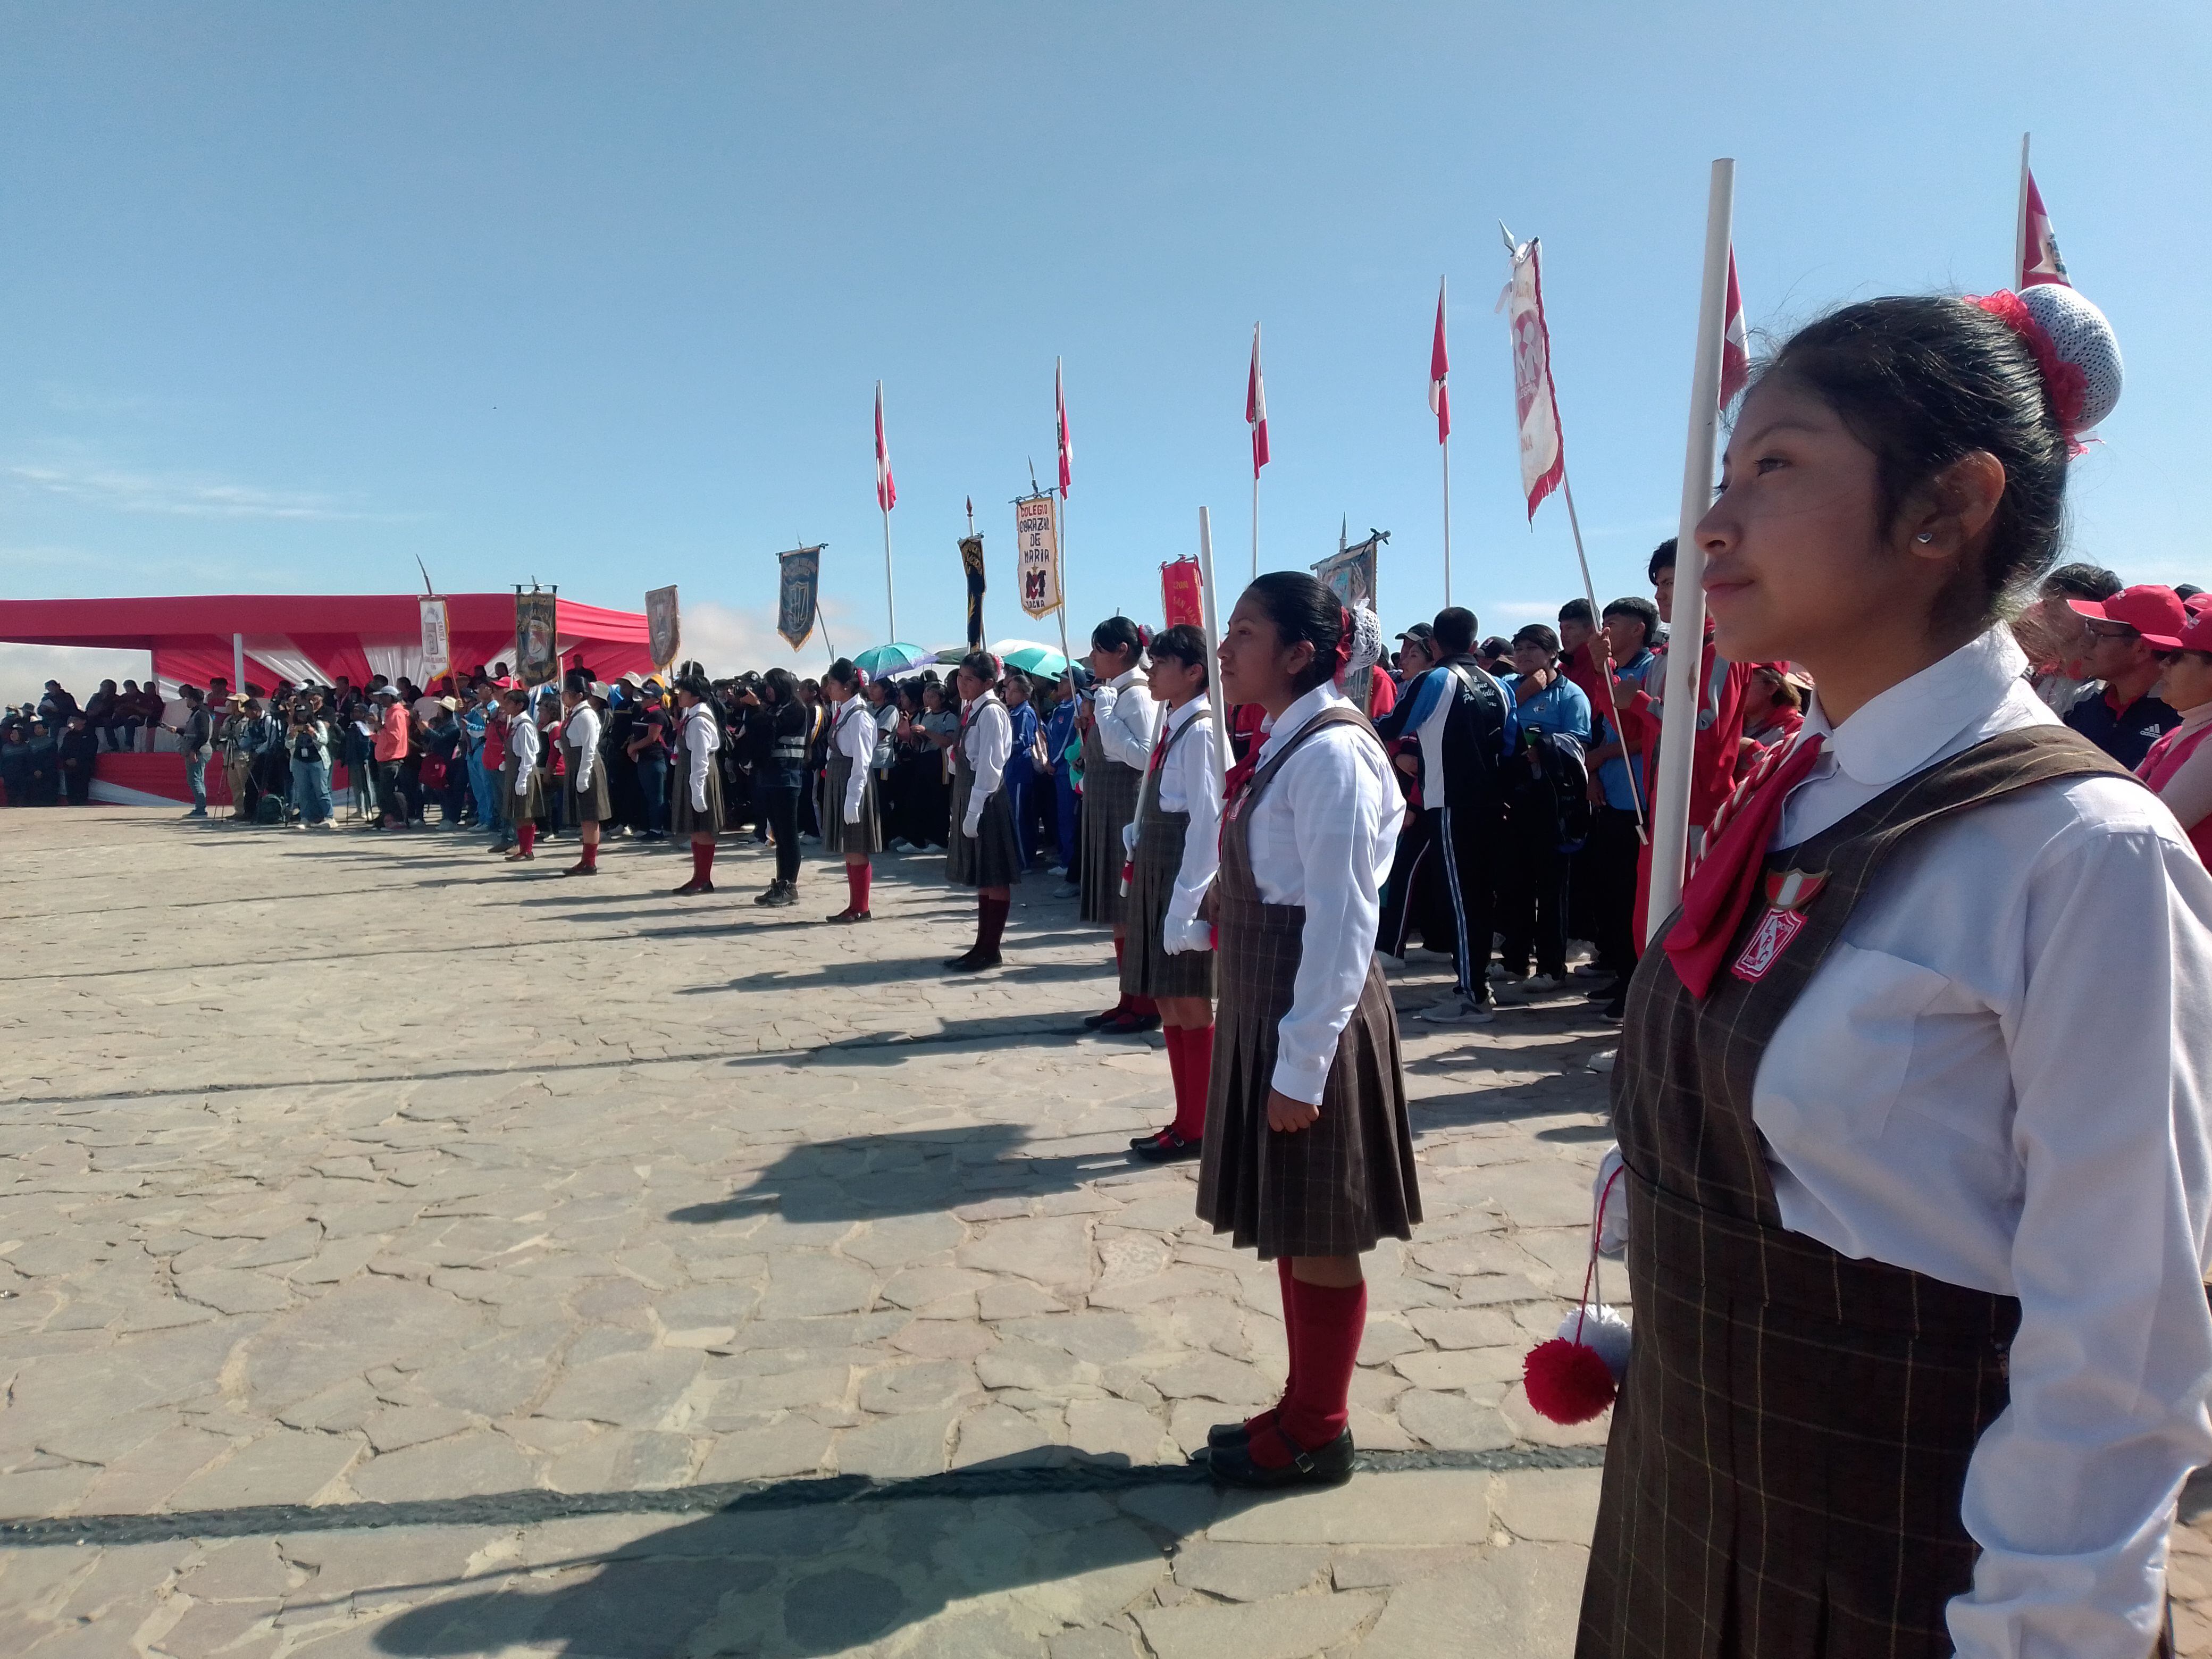 Delegaciones de 34 colegios de la región de Tacna se hacen presentes para participar en la actividad que concita la atención de propios y visitantes. (Foto: Adrian Apaza)